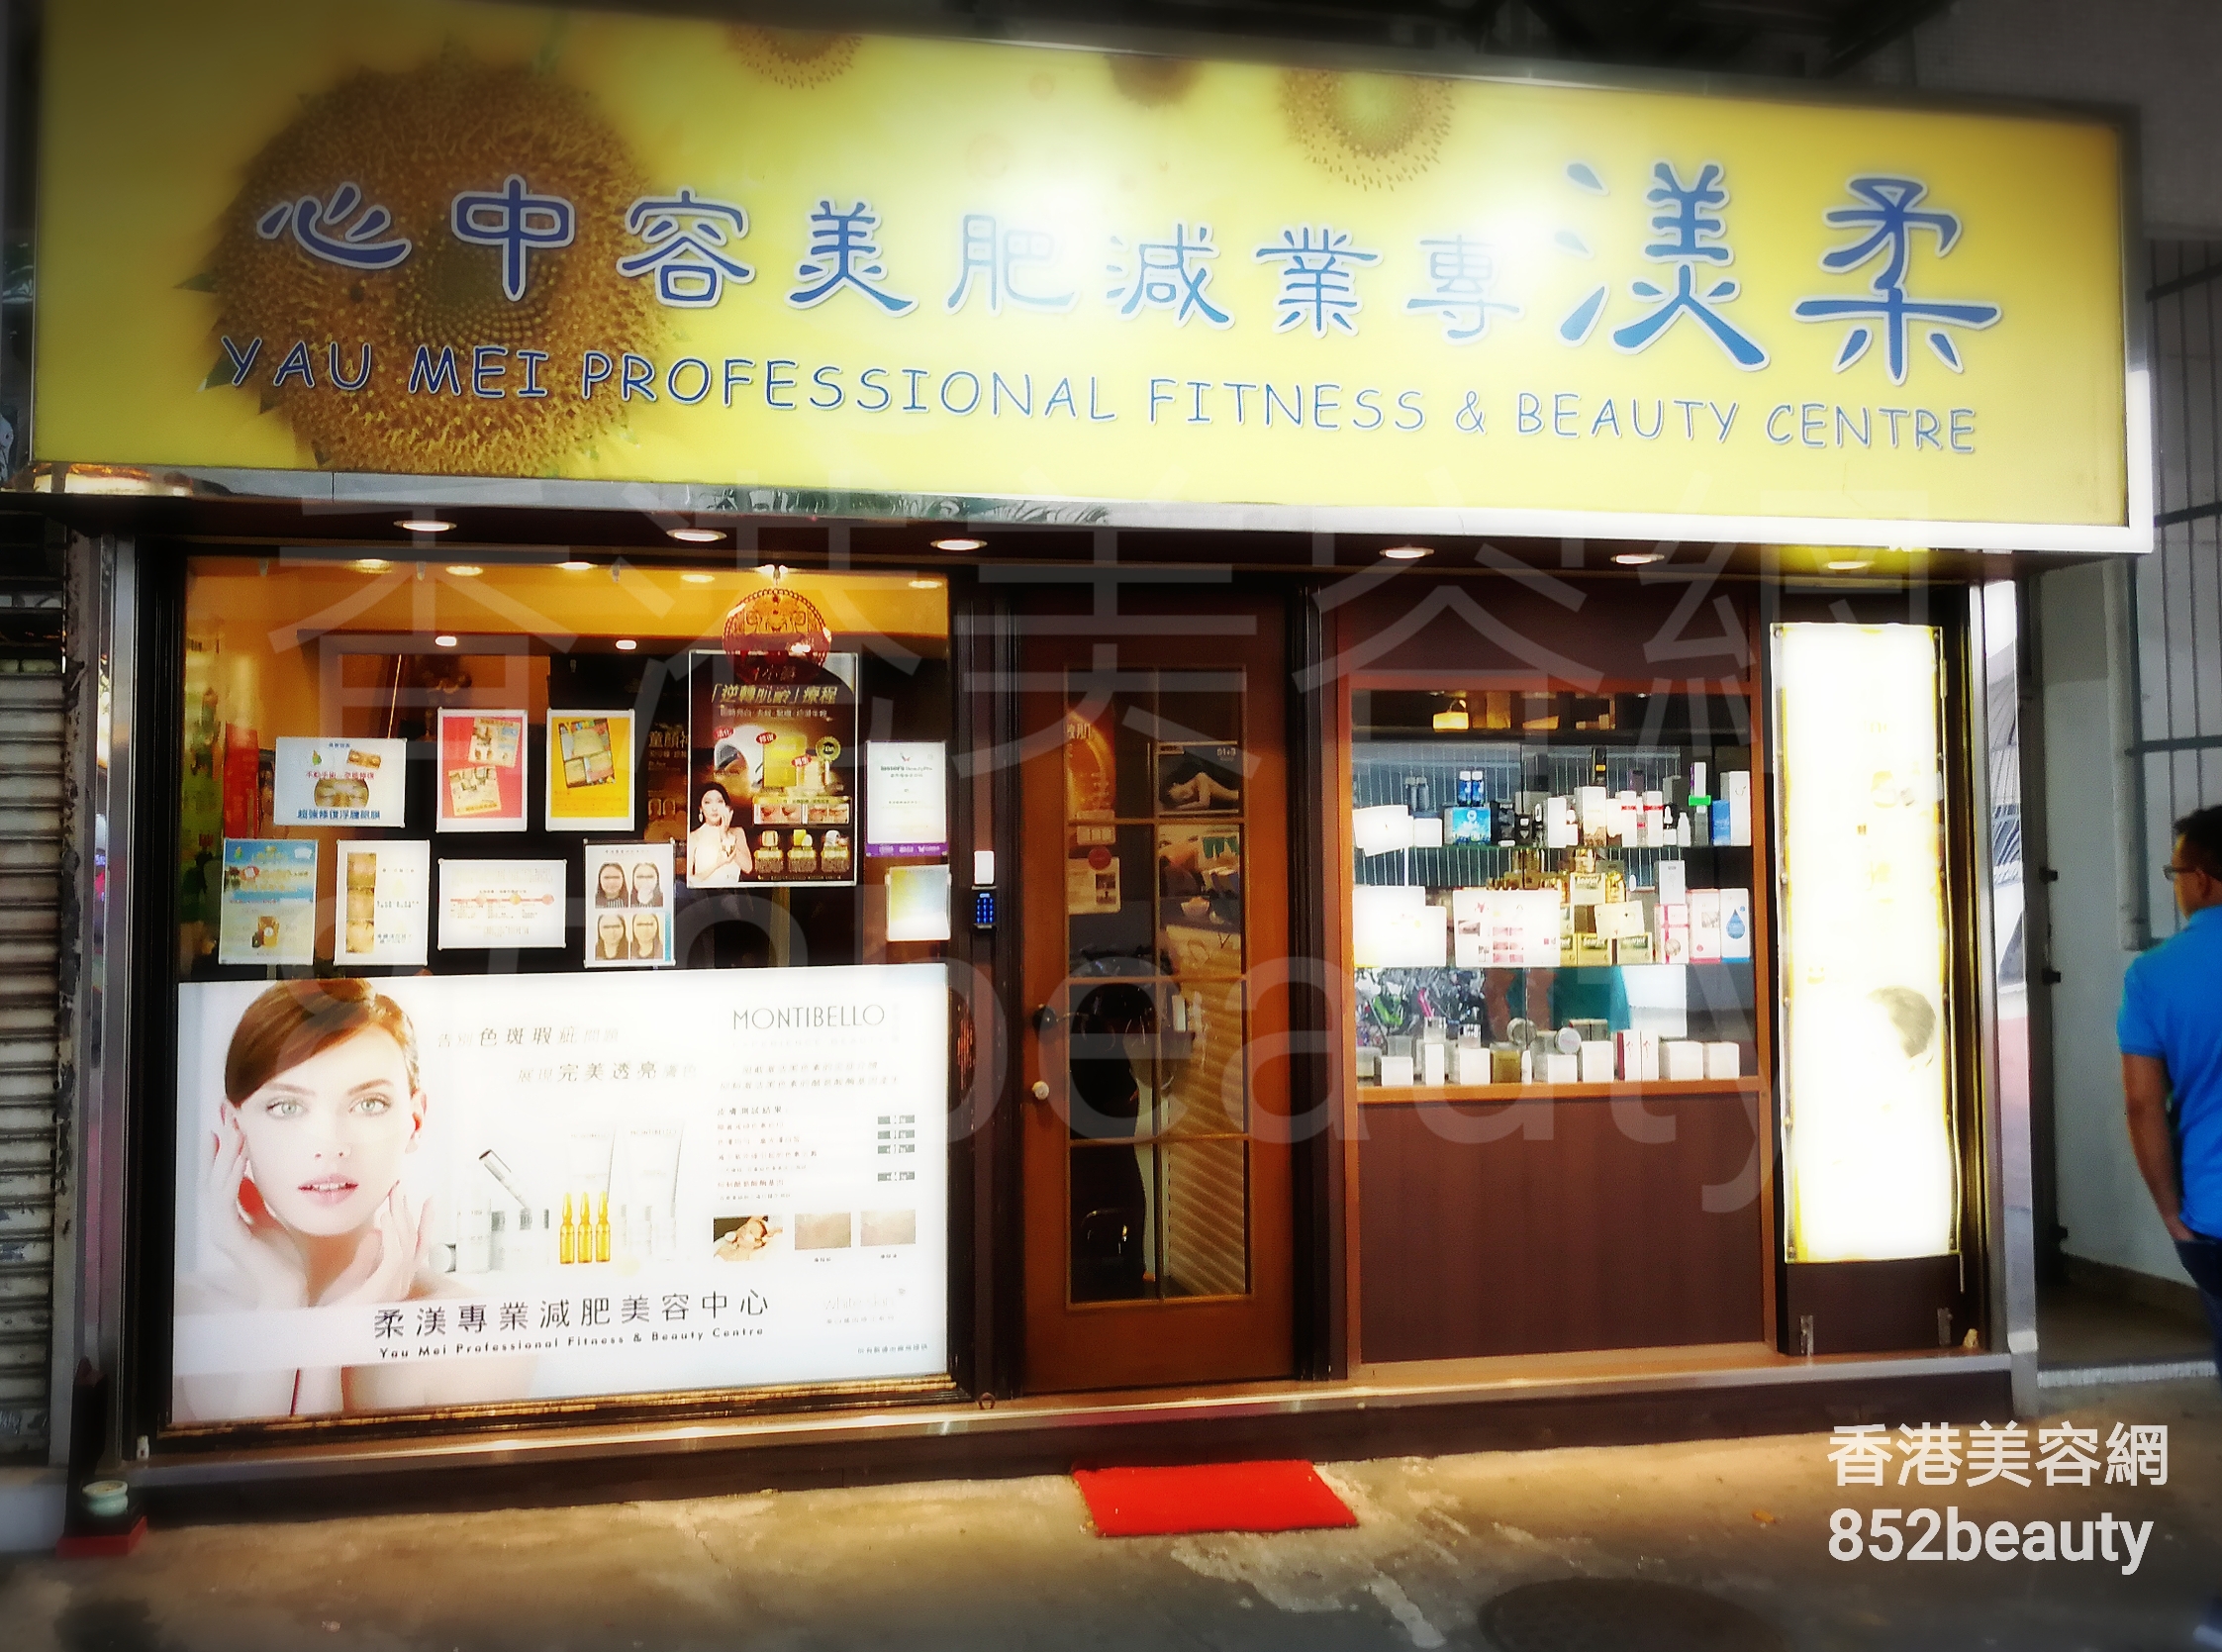 香港美容網 Hong Kong Beauty Salon 美容院 / 美容師: 柔渼專業減肥美容中心